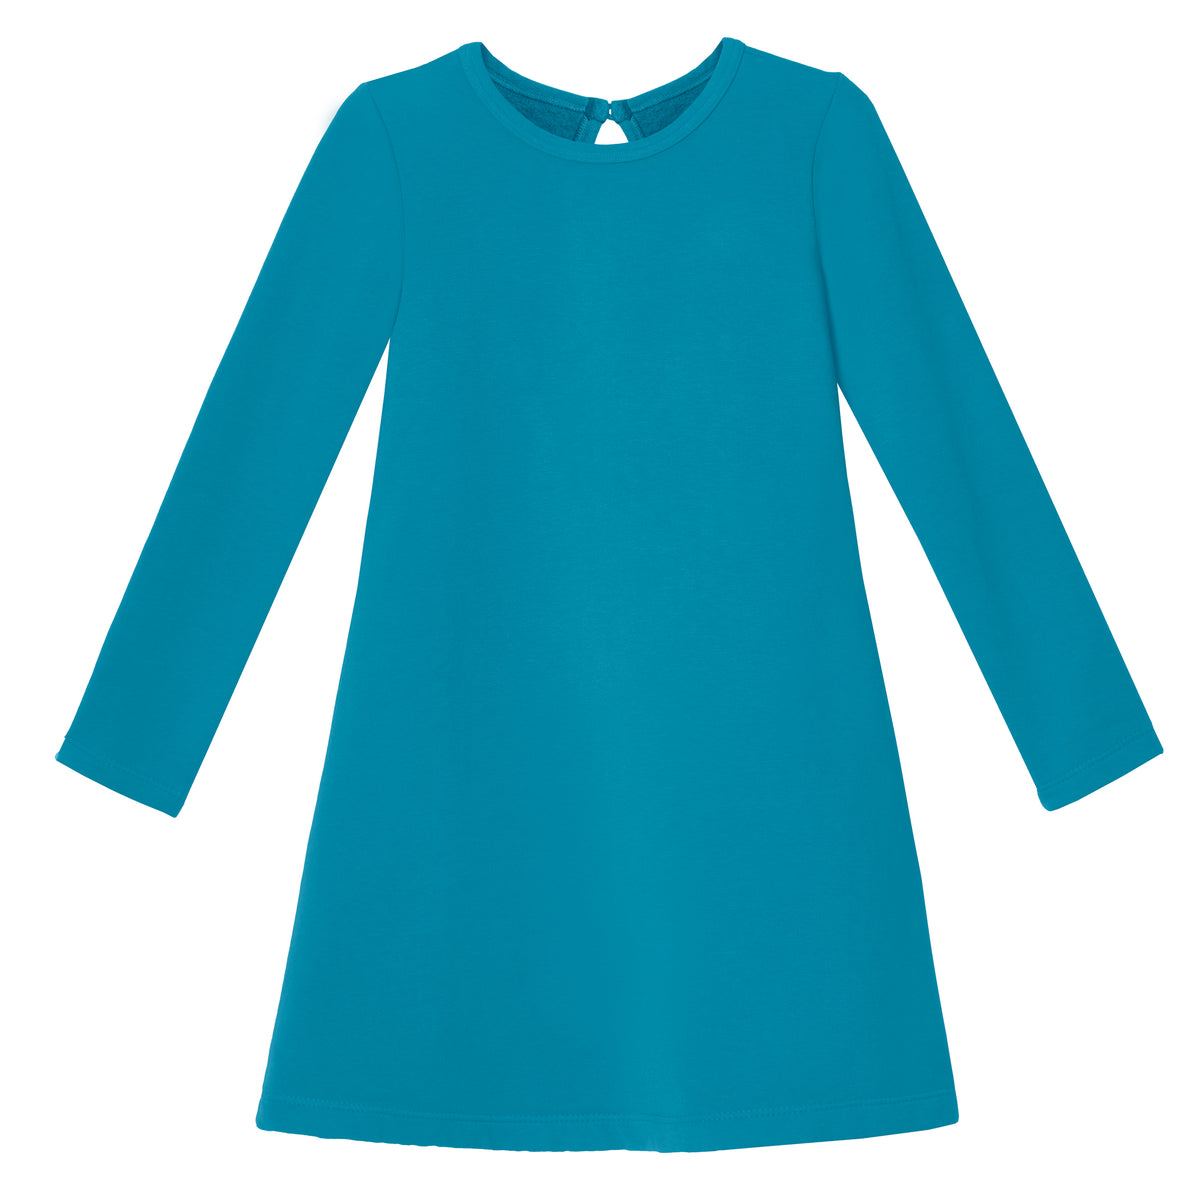 Girls Lightweight Soft Cotton Fleece A-Line Dress| Teal